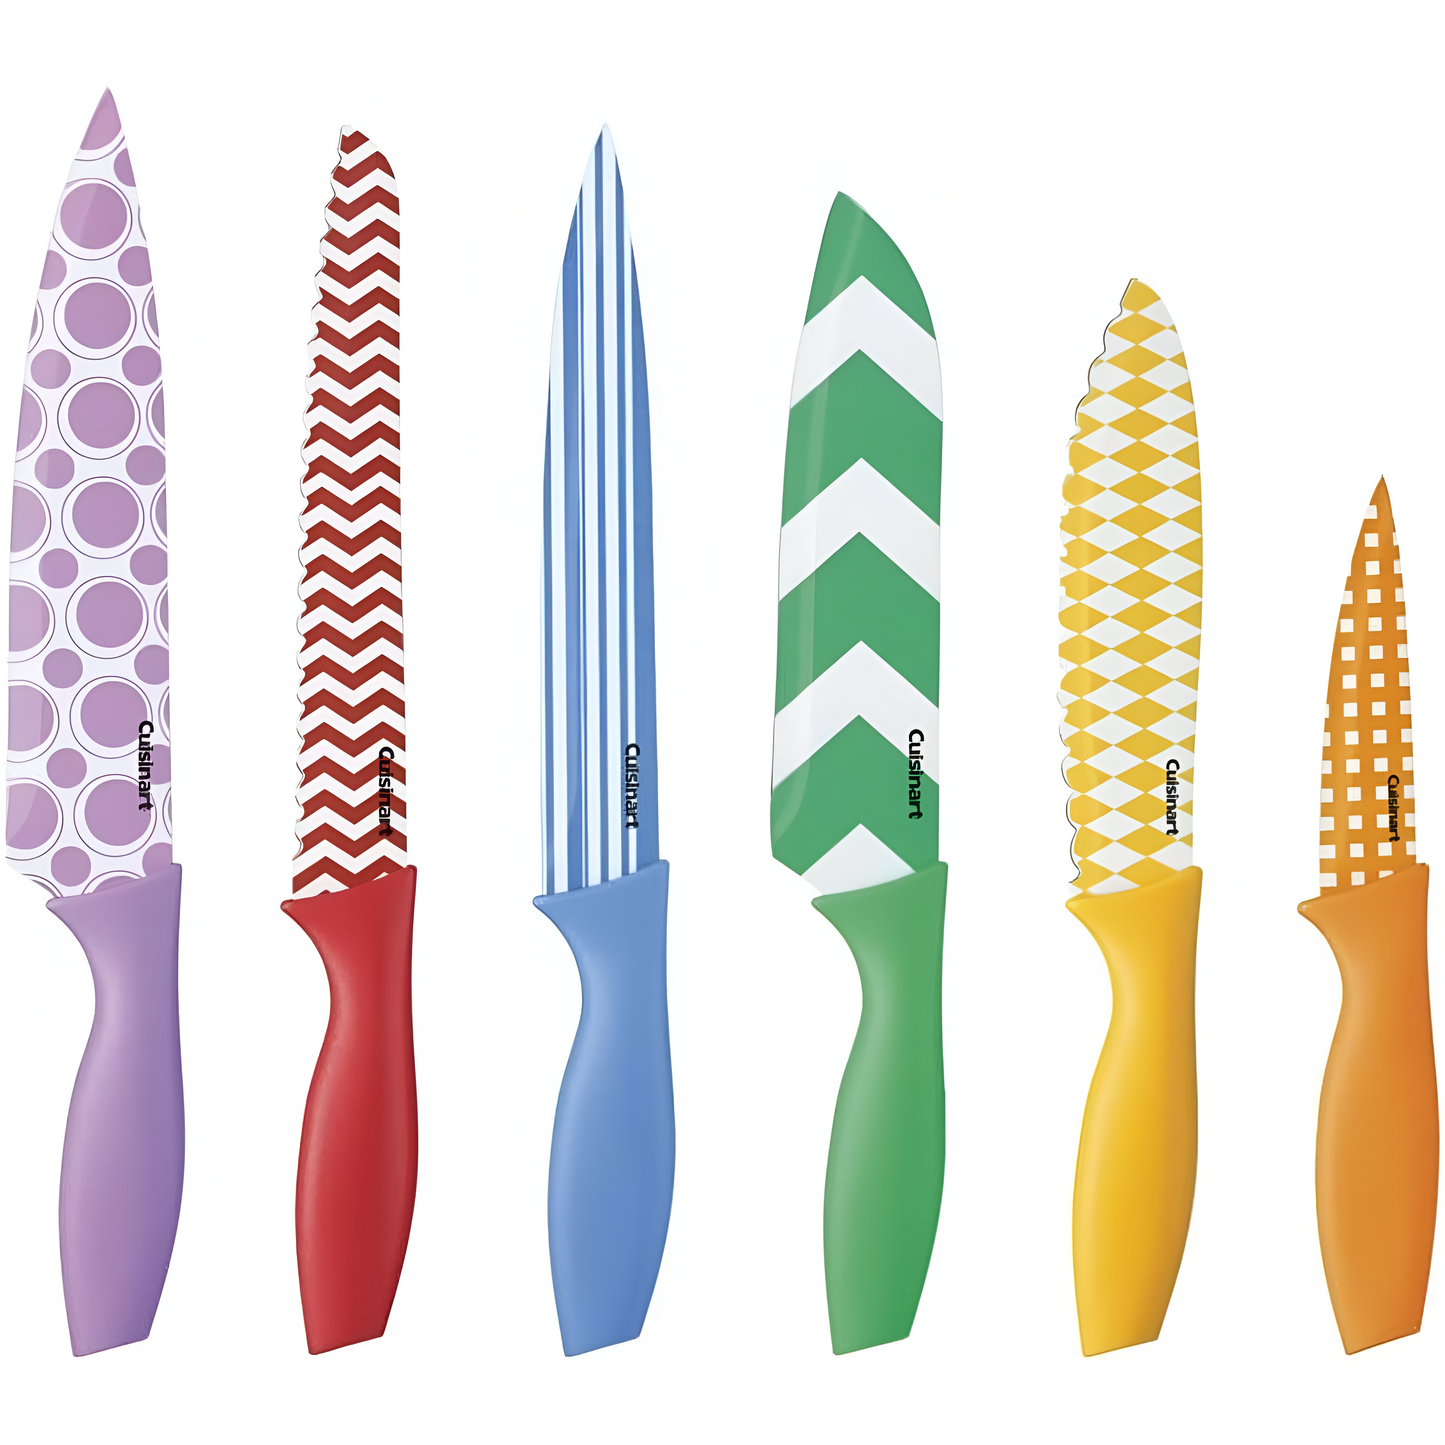 Juego de Cuchillos impresos en color con protectores de cuchilla, 12 piezas, multicolor